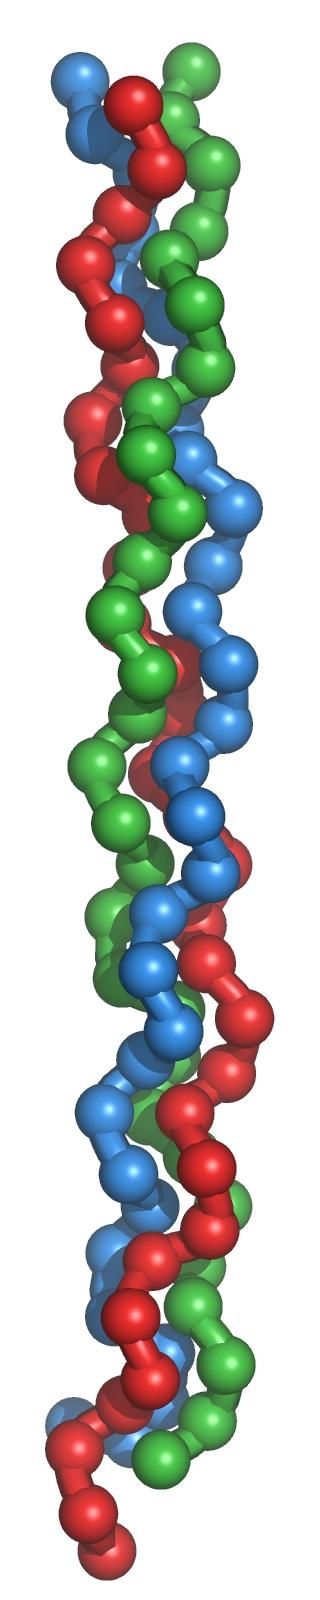 Exemple de protéine globulaire : forme compacte